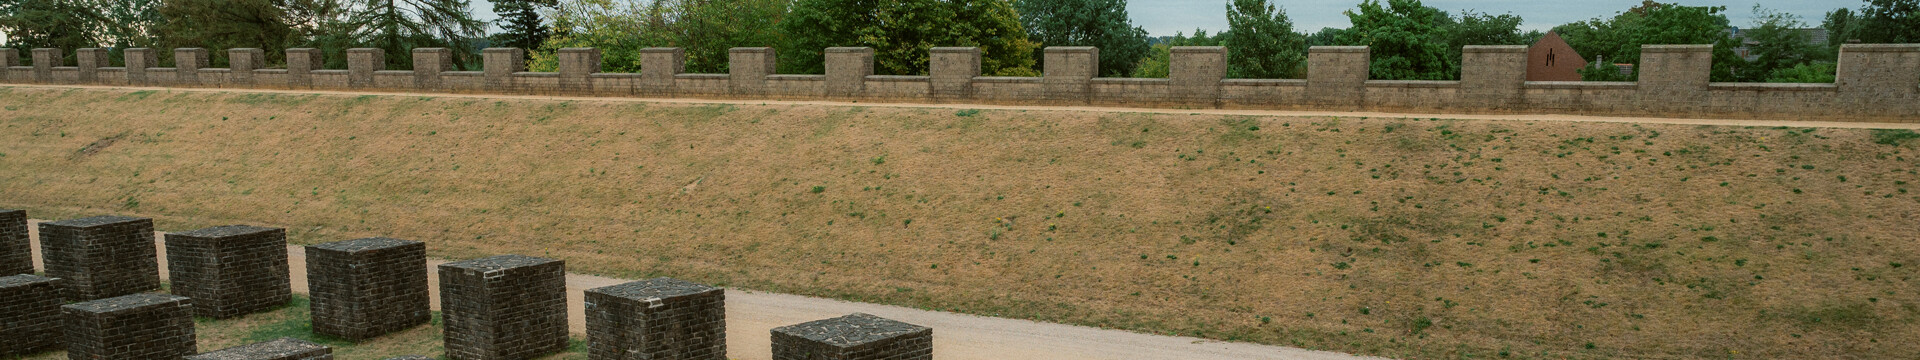 Schutzwall im Archäologischen Park Xanten